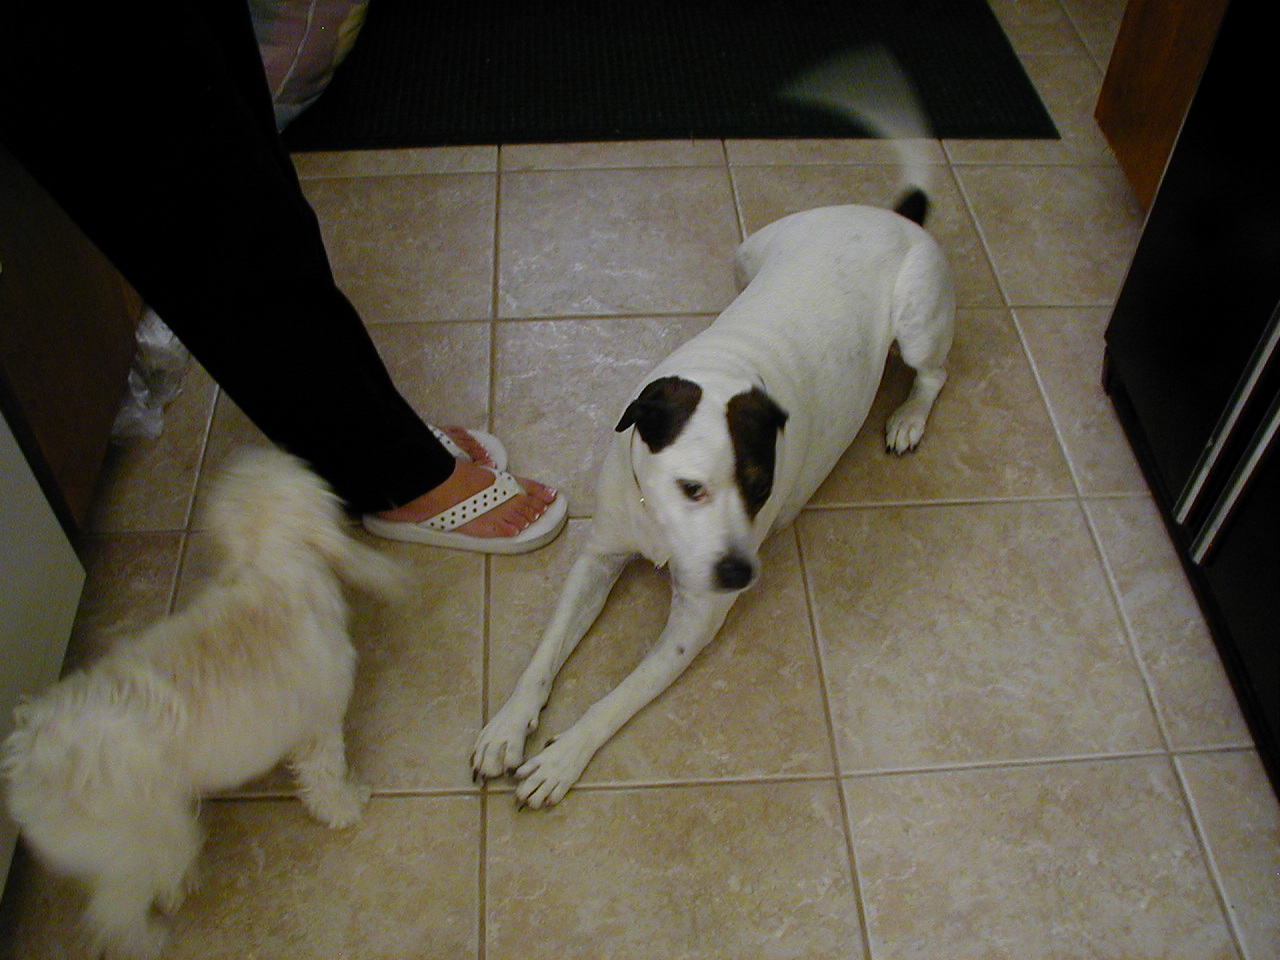 dogs on kitchen floor